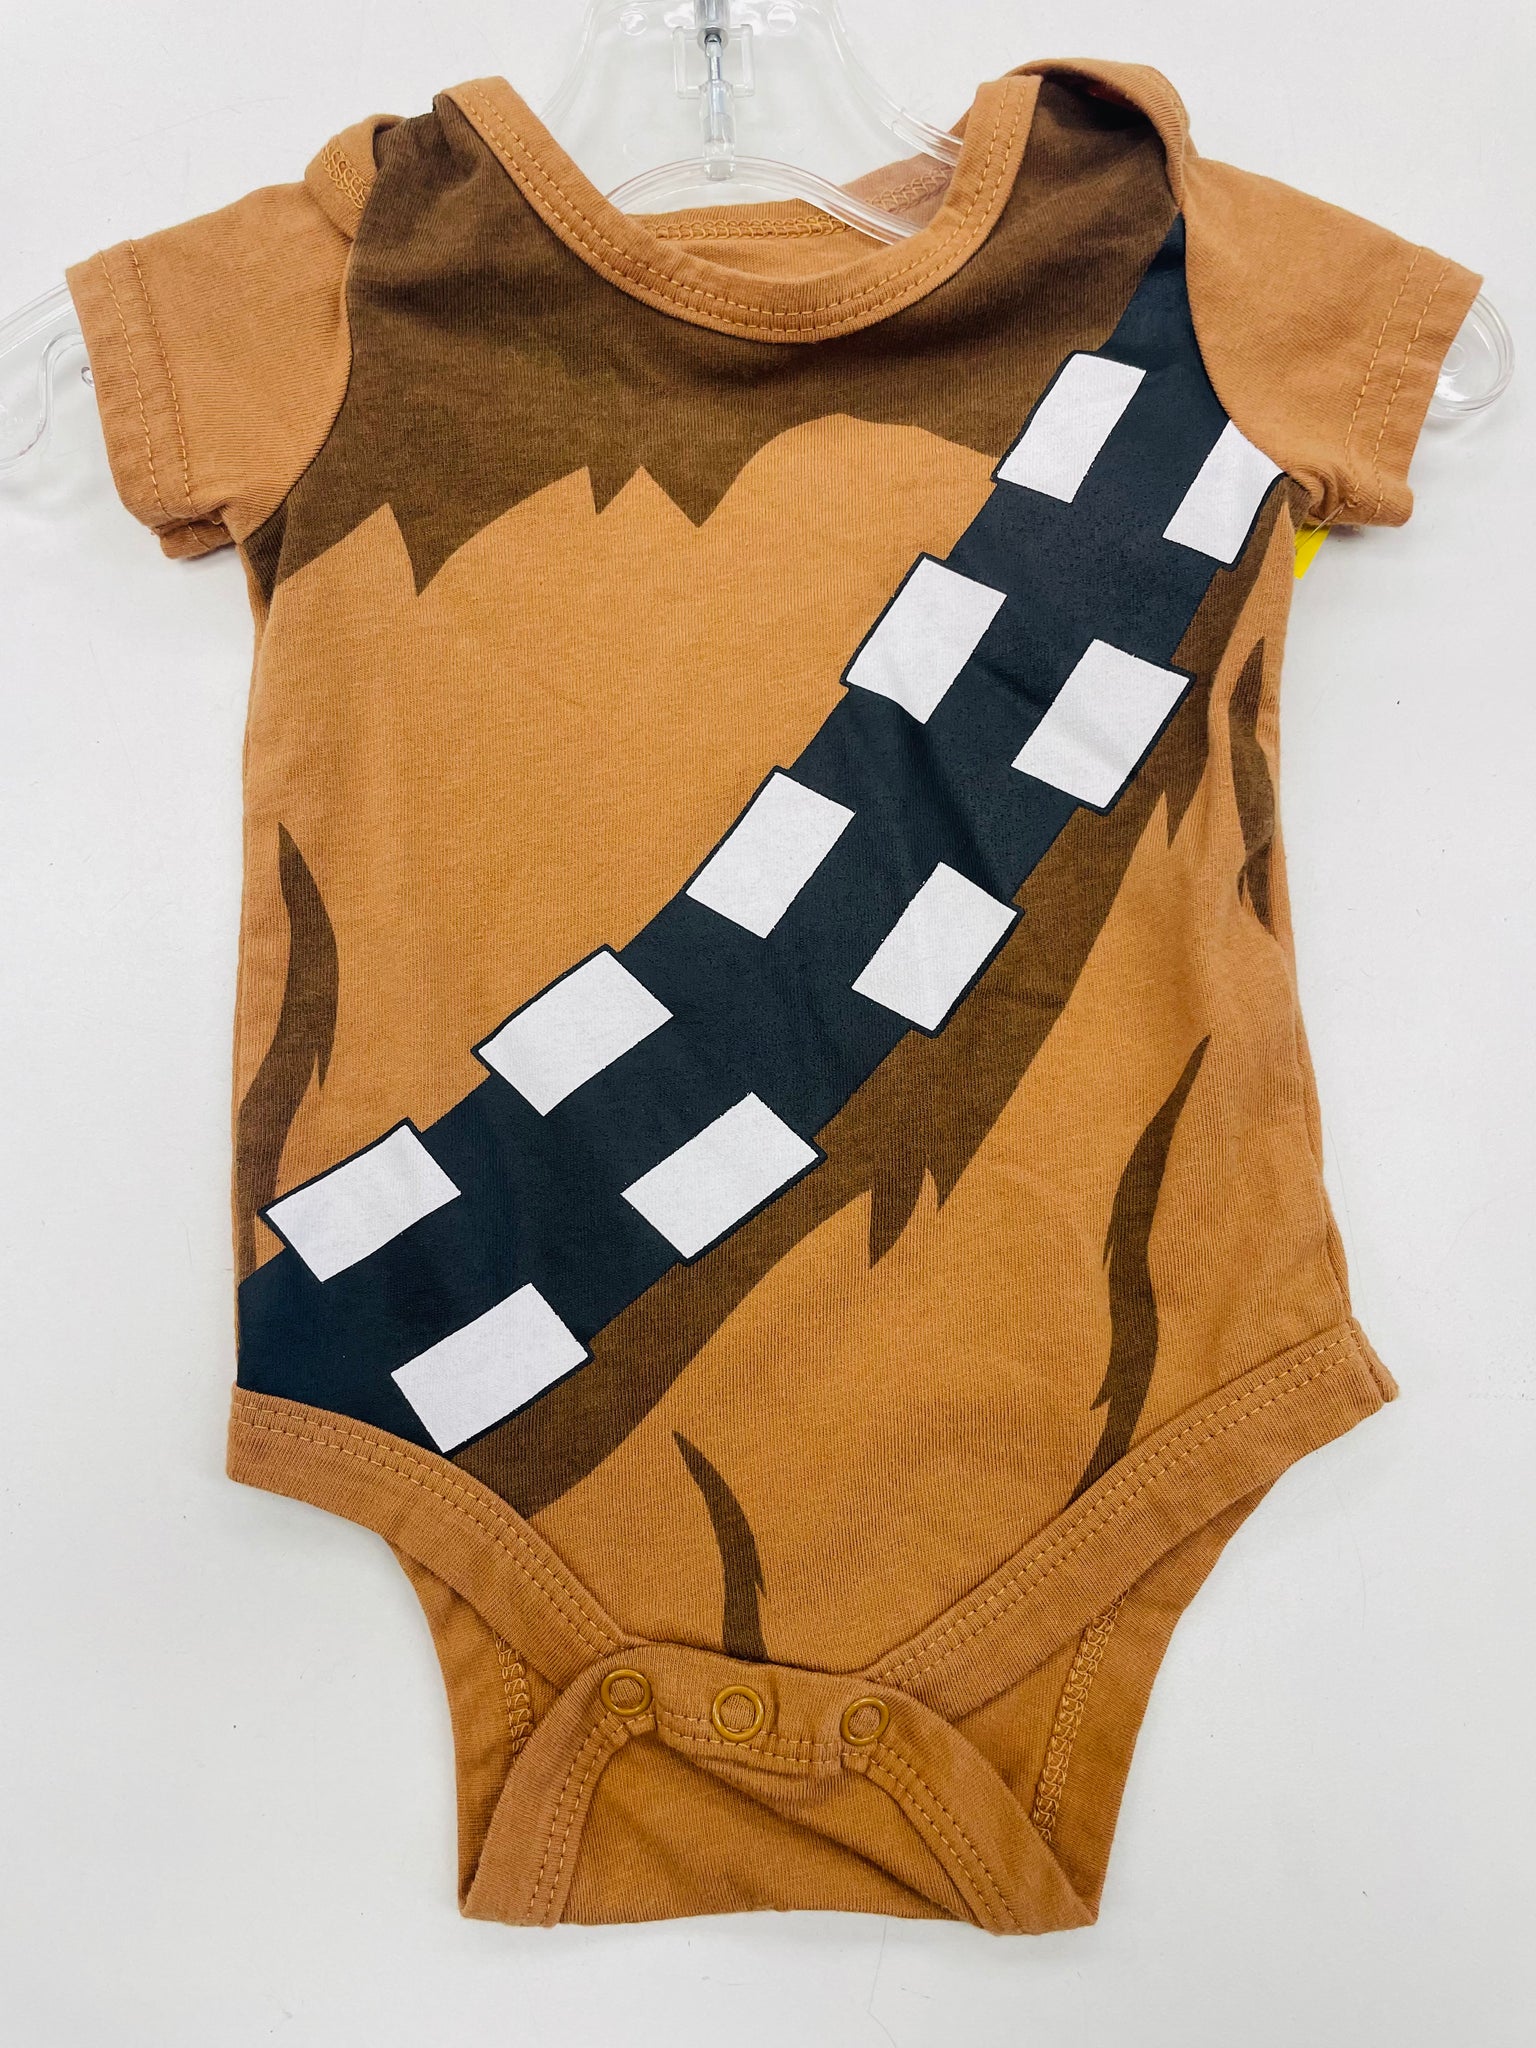 Infant Boys Star Wars Onesie 3 months